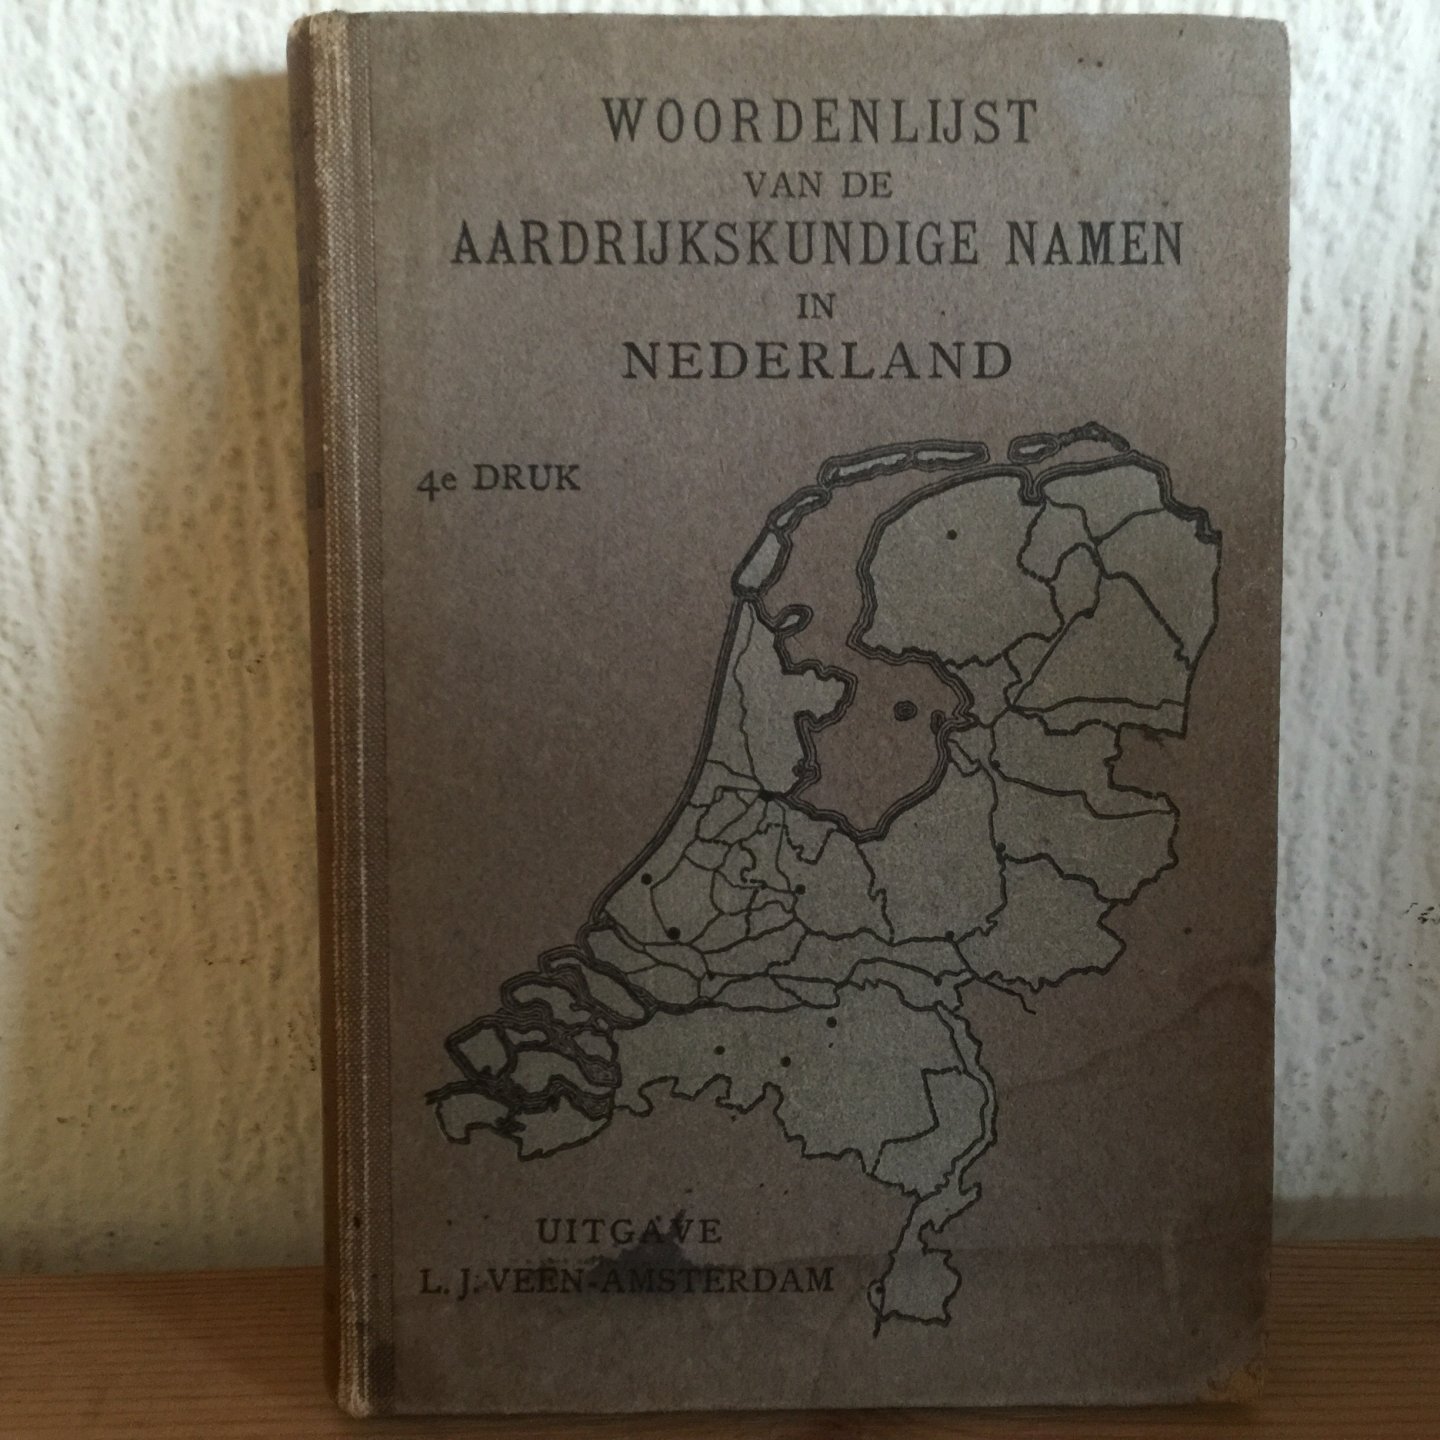  - Woordenlijst vande AARDRIJKSKUNDIGE NAMEN in  Nederland, 4e druk